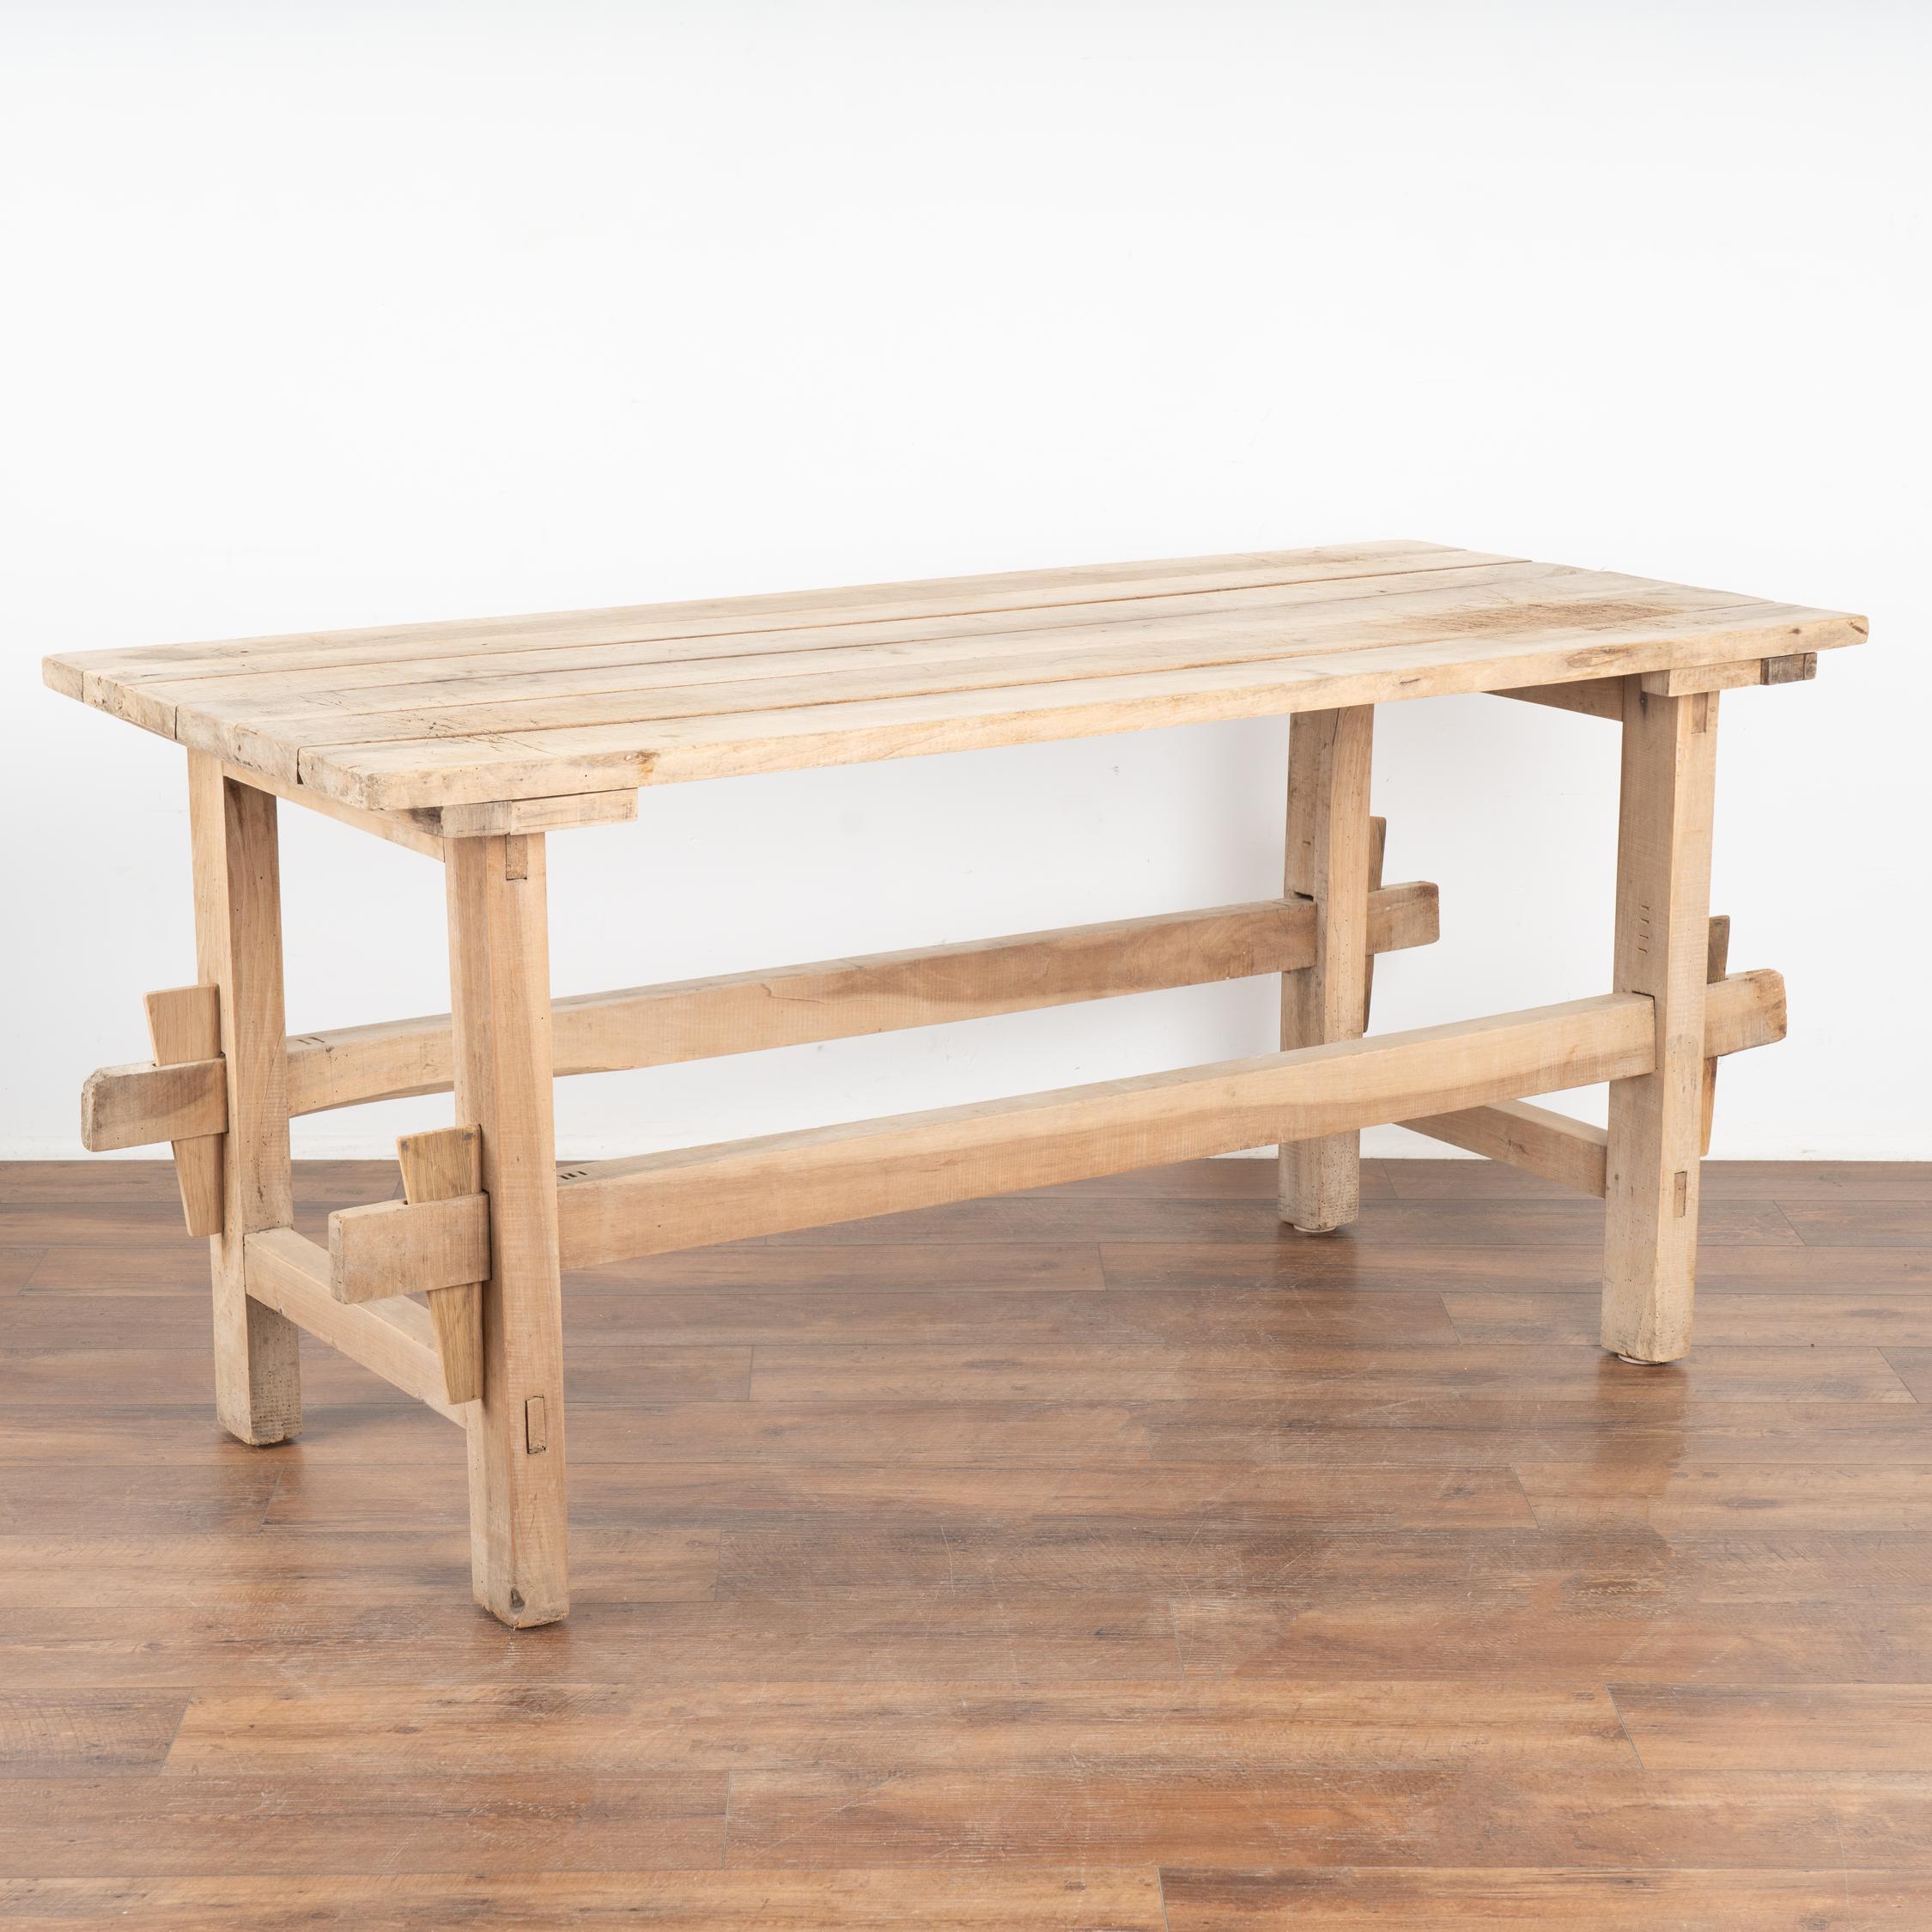 Cette magnifique table de ferme ancienne provenant de la campagne suédoise servira de table rustique dans les maisons modernes d'aujourd'hui.
Cette table à tréteaux servait à l'origine de  table de travail. Regardez les photos du dessus pour